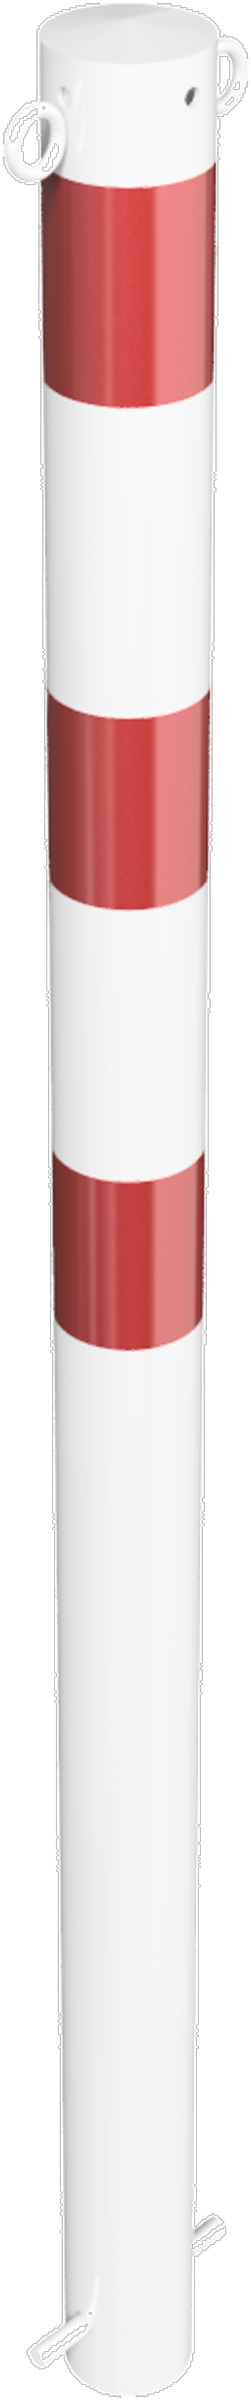 Schake Absperrpfosten OE Ø 76 mm mit 2 Ösen weiß | rot